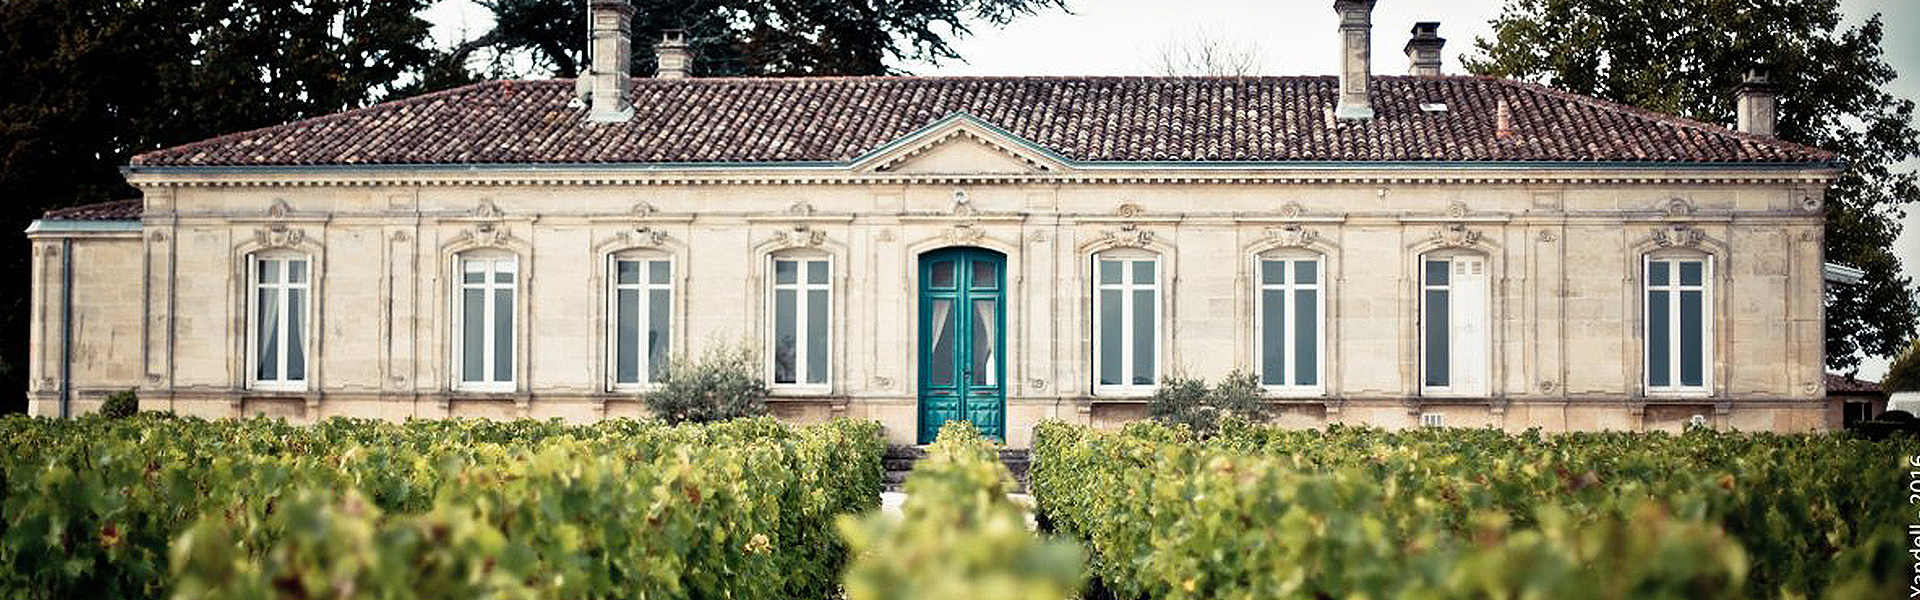 166-Bordeaux-blogbanner-z-tekst.jpg